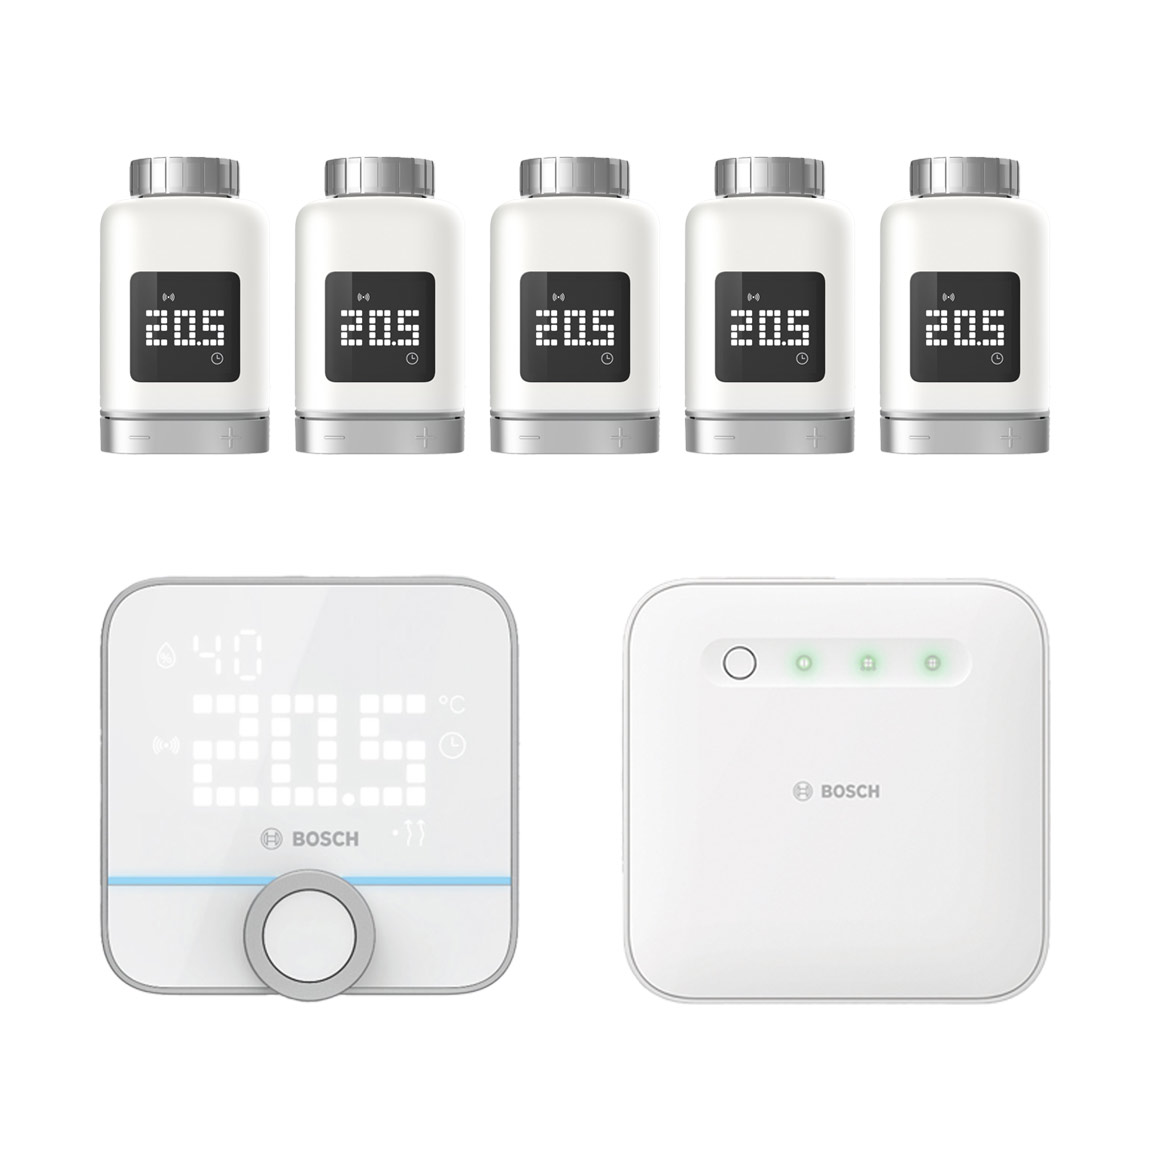 Bosch Smart Home – Starter Set Heizung II mit 5 Thermostaten + Raumthermostat II – Deal, Schnäppchen, sparen